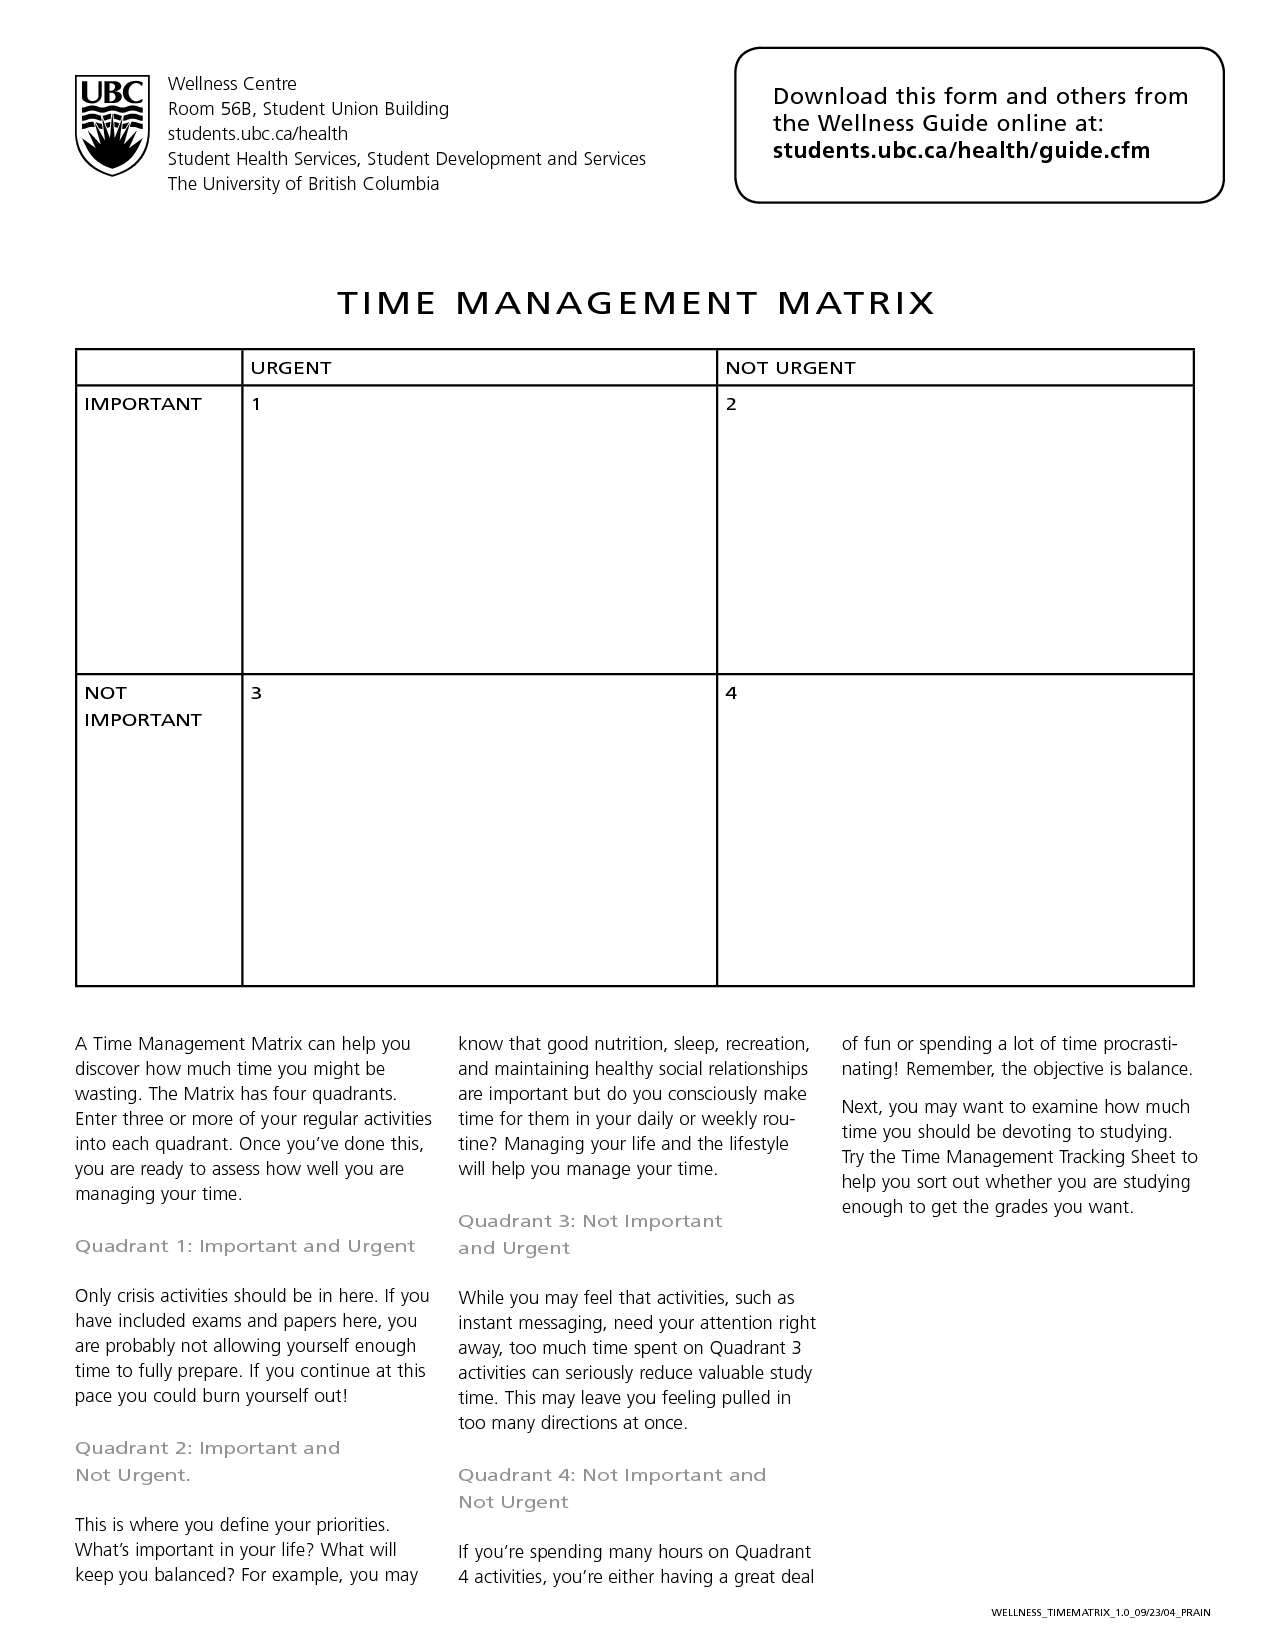 worksheet time management